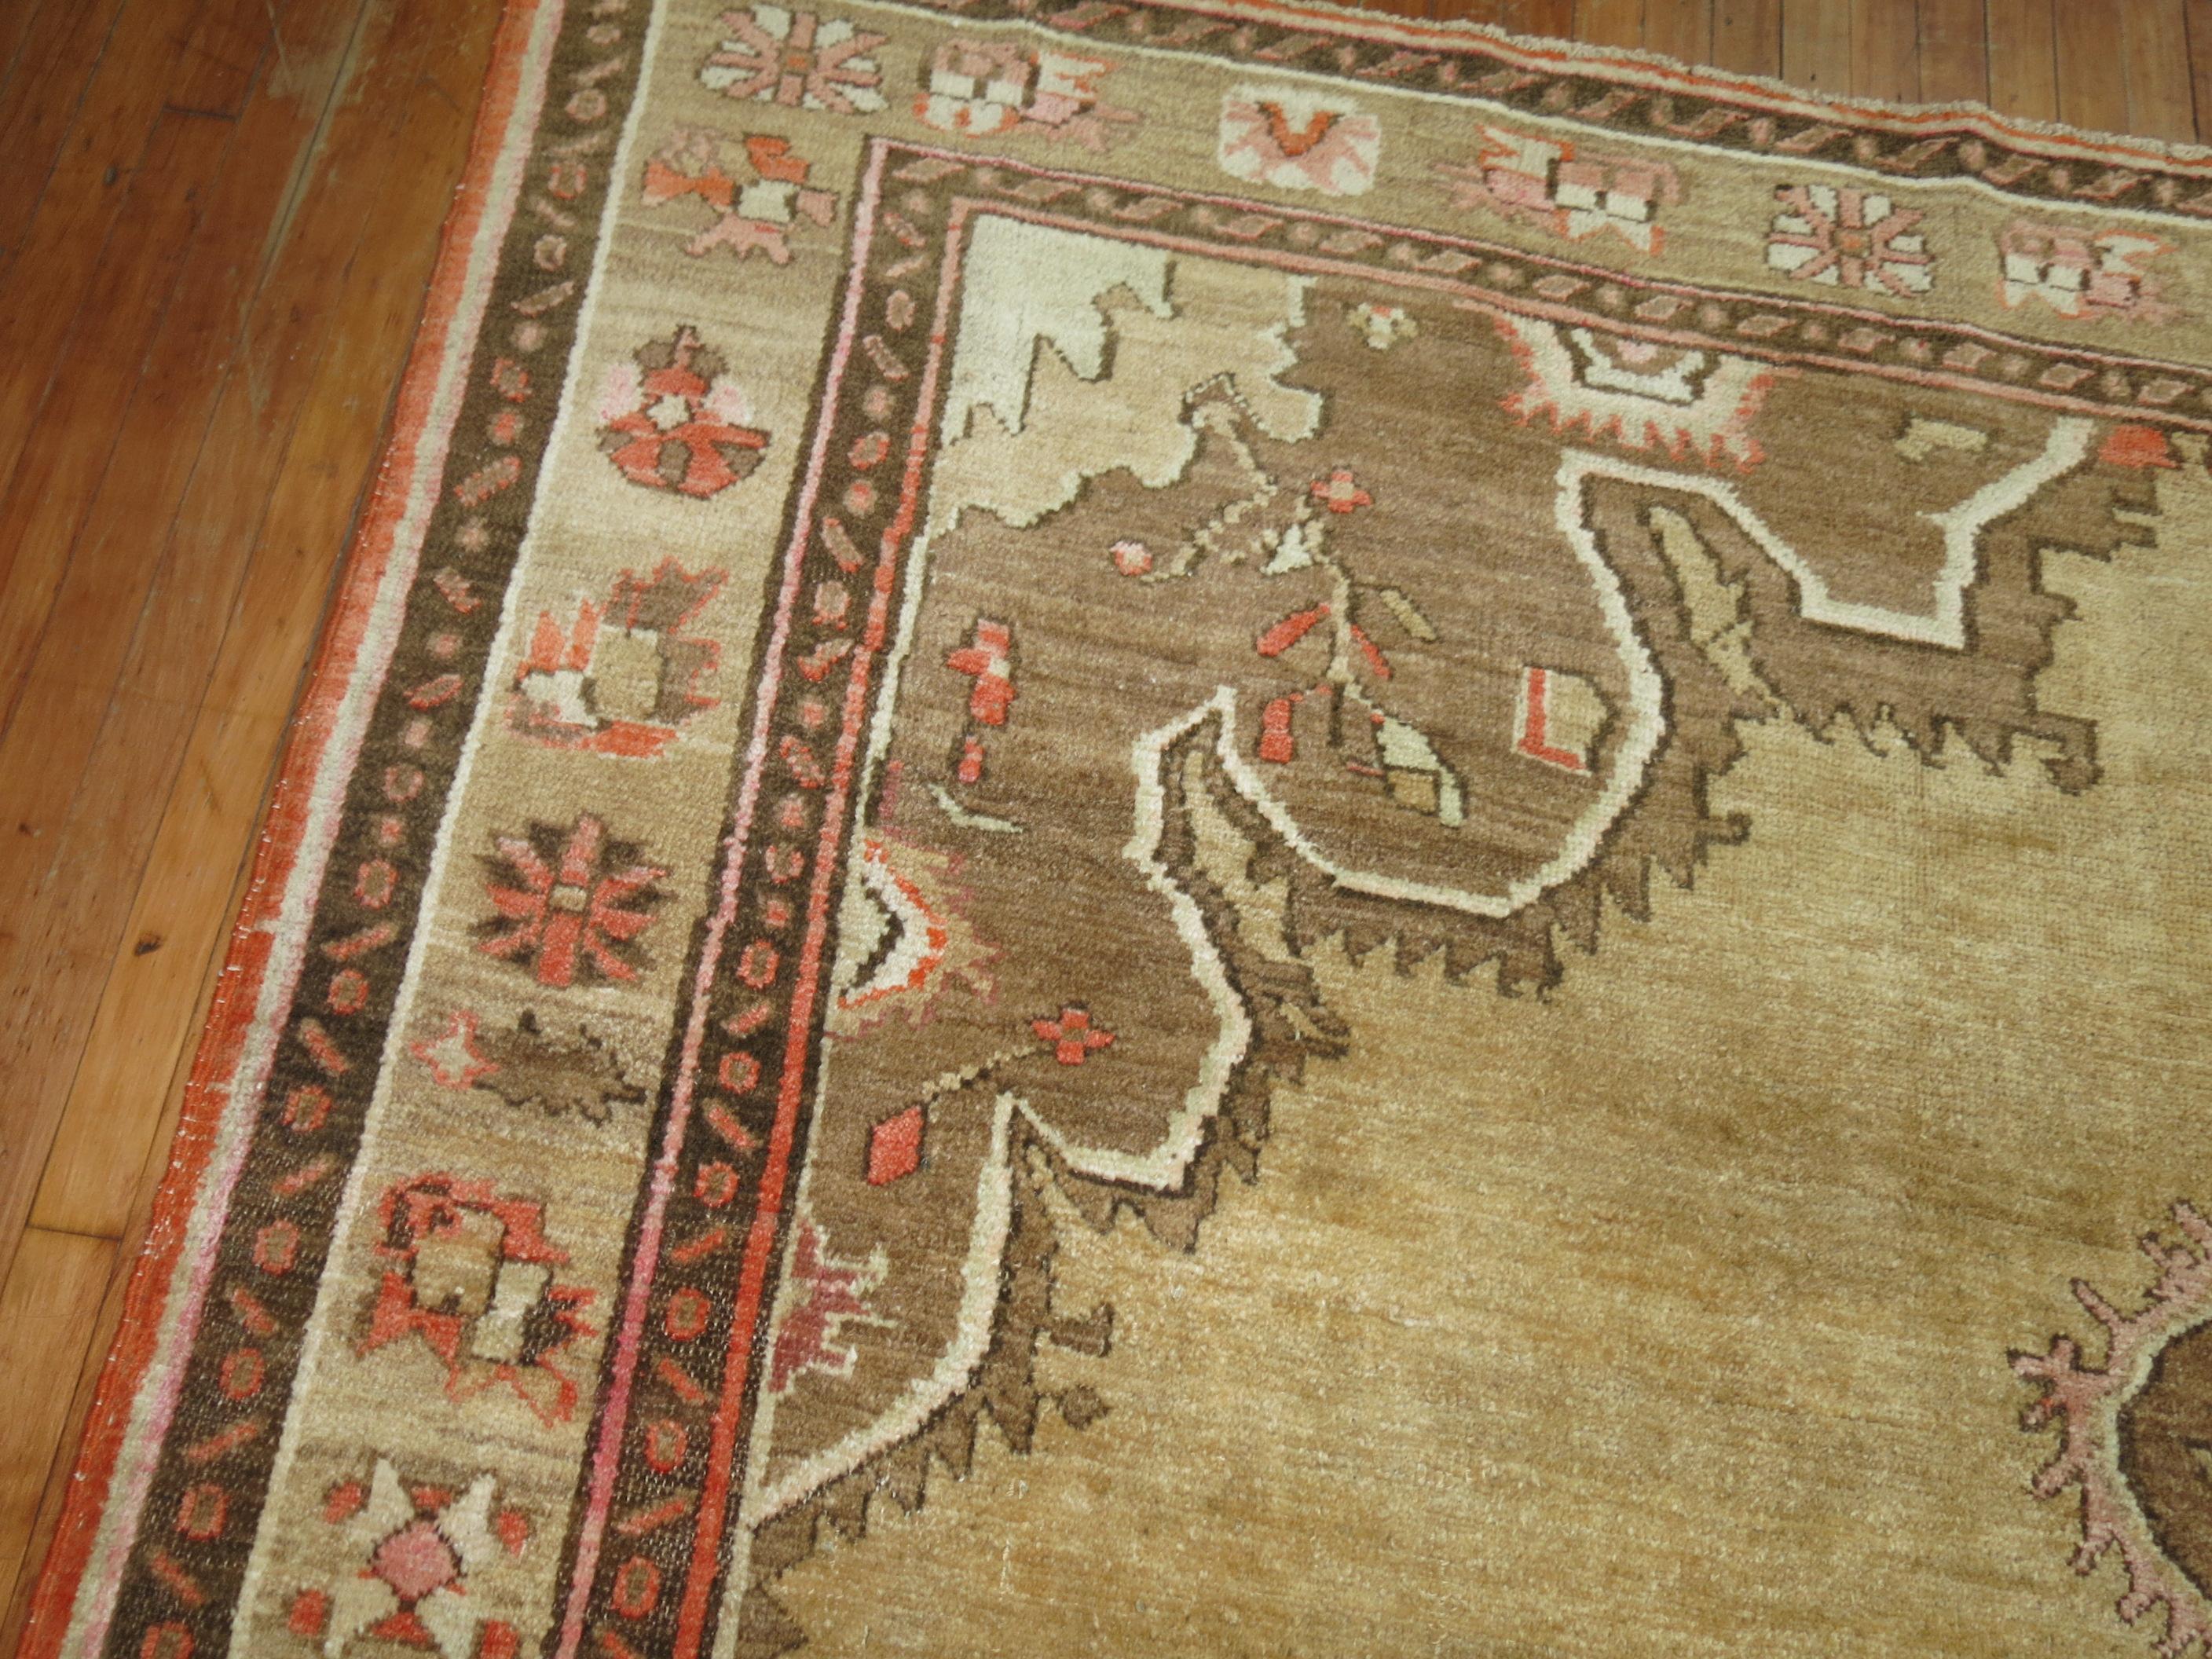 Zimmergroßer türkischer Kars-Teppich mit traditionellem Medaillon- und Bordürenmuster auf beigem Grund von 1986

Maße: 8'2